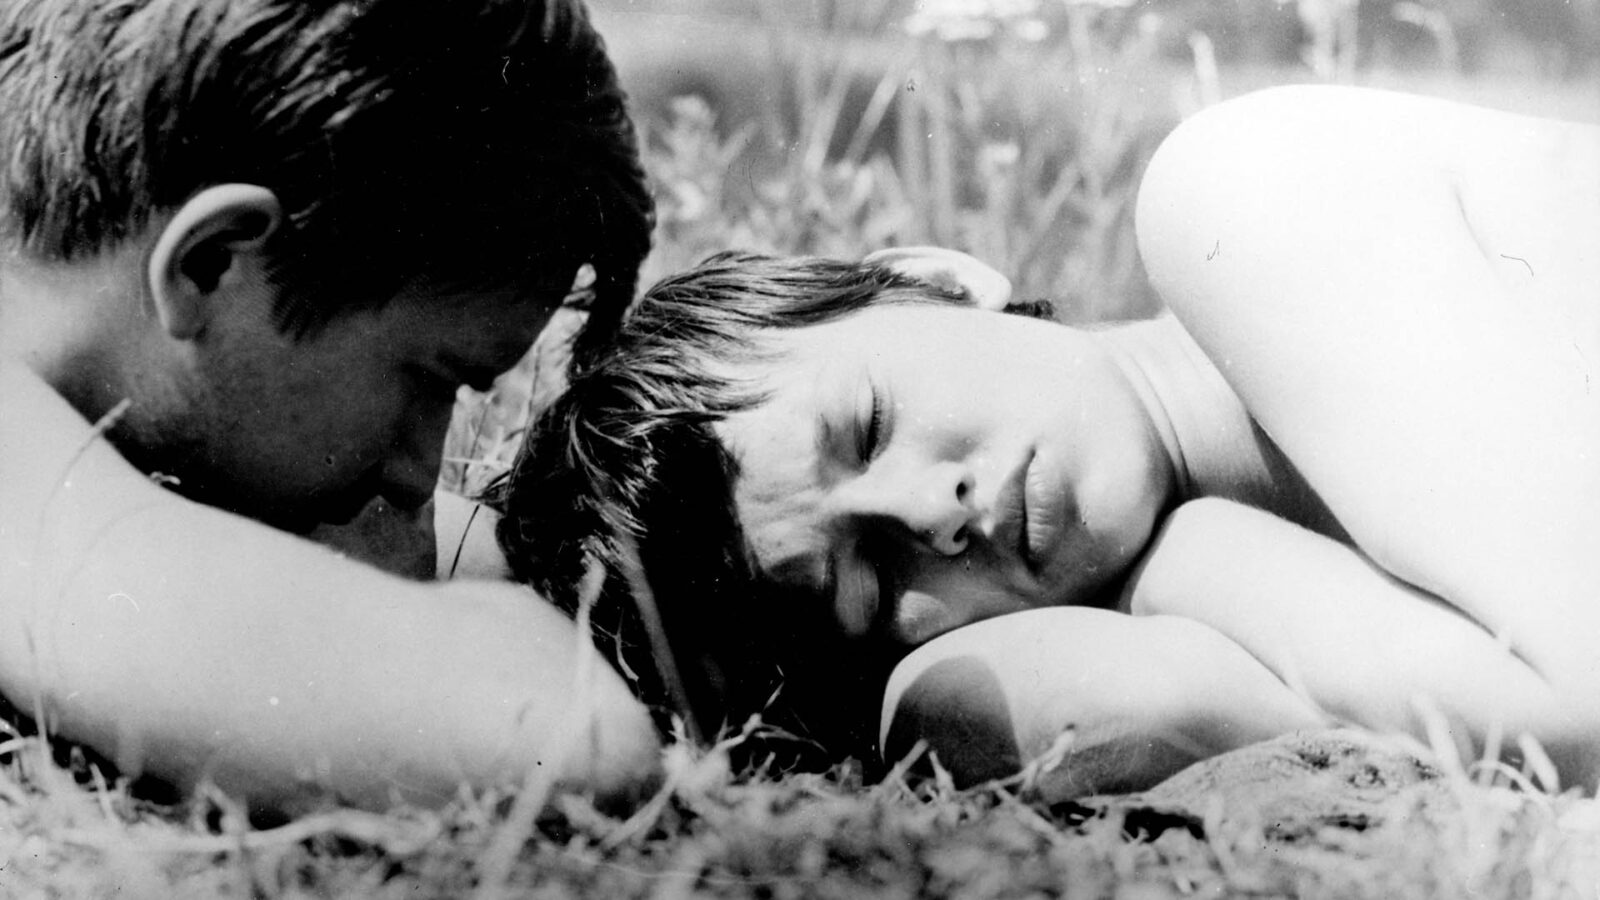 Filmstill aus dem Film "Der schwarze Peter". Ein Mann und eine Frau liegen auf einer Wiese.